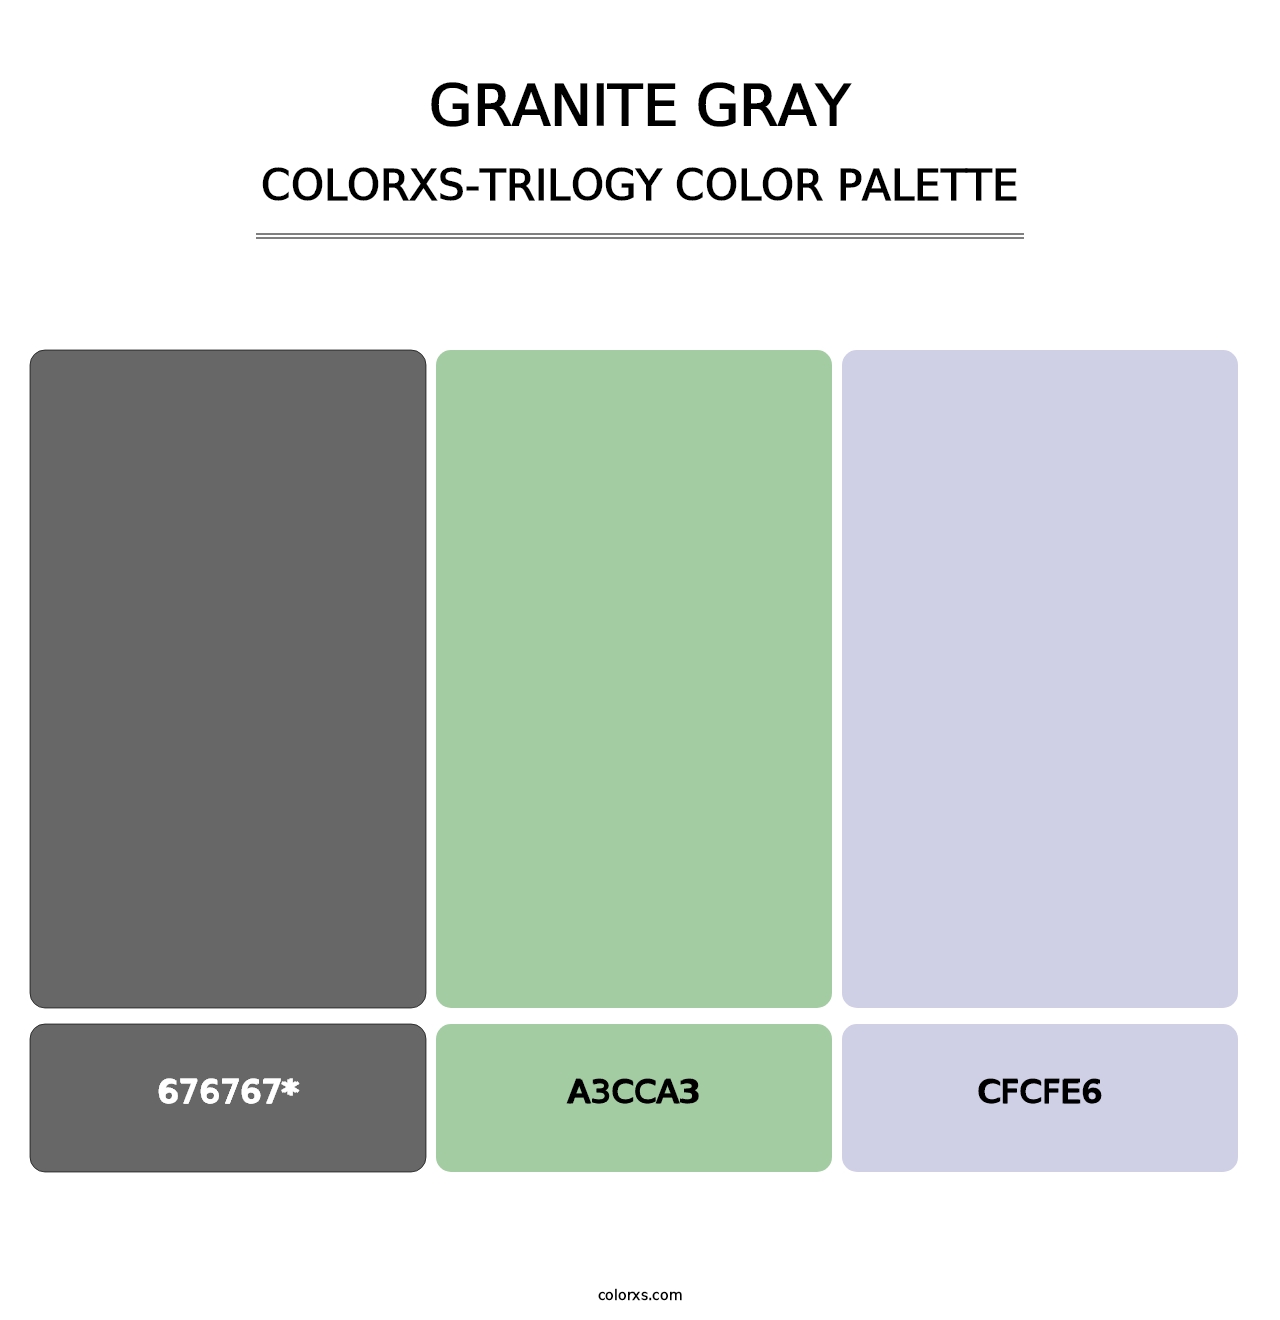 Granite Gray - Colorxs Trilogy Palette